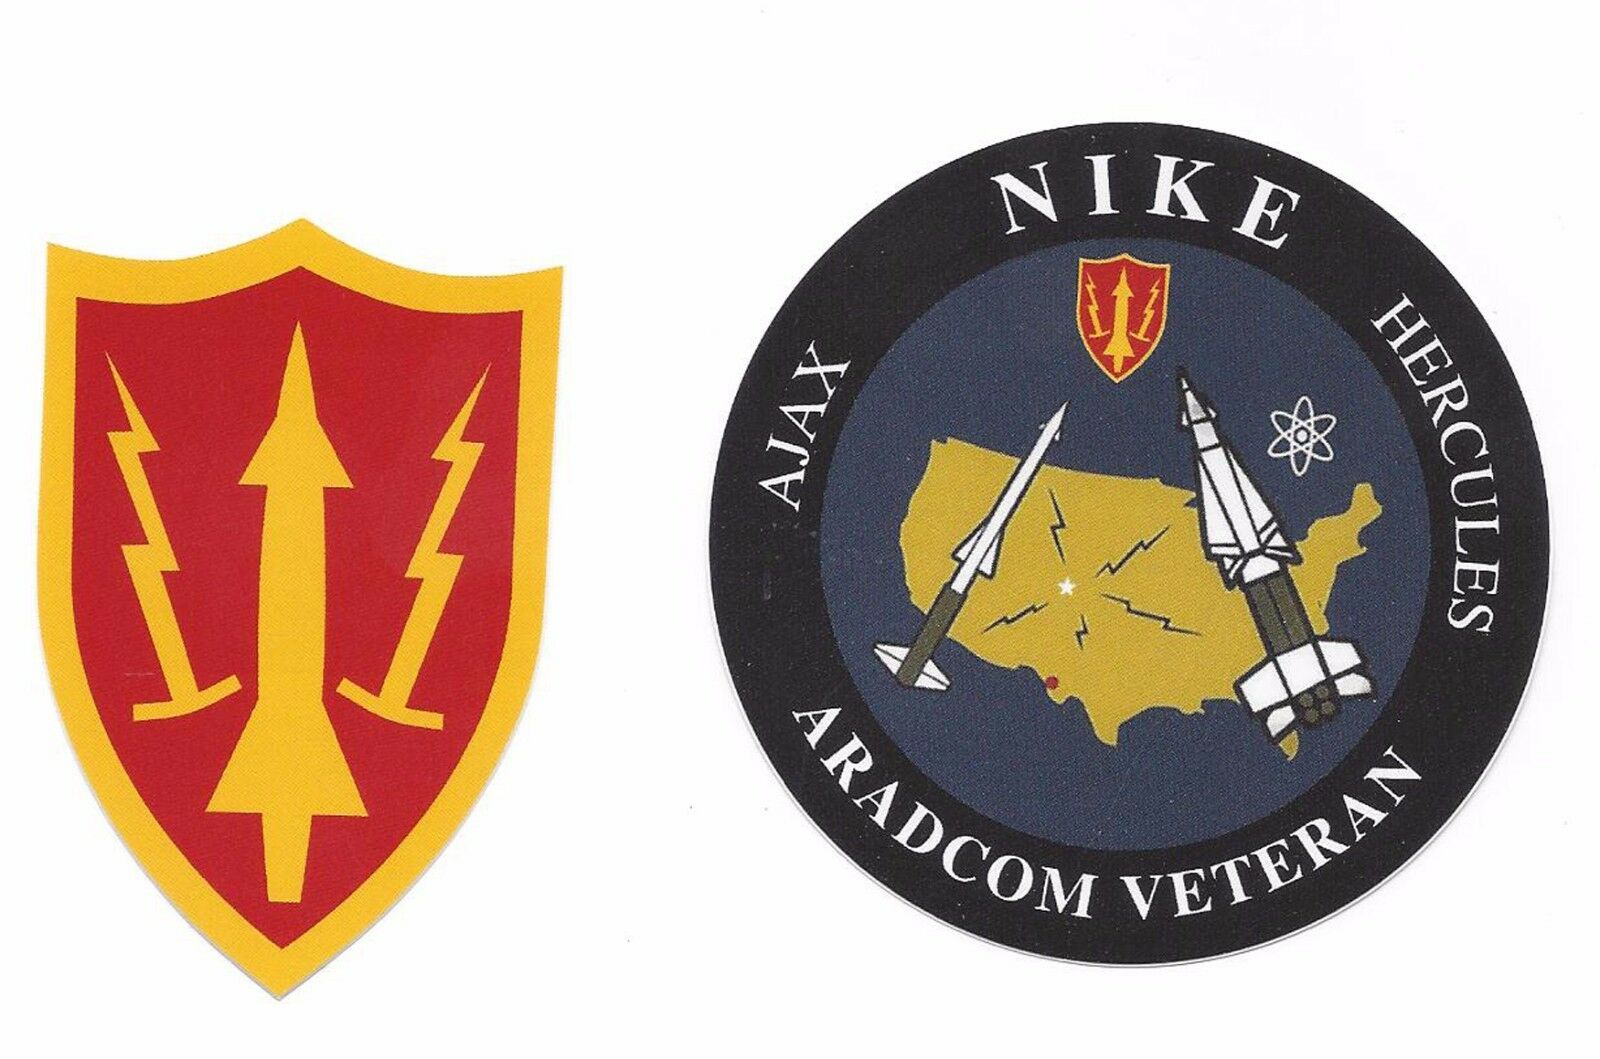 Army Air Defense Command Aradcom & Aradcom Veteran Vinyl Decal Set